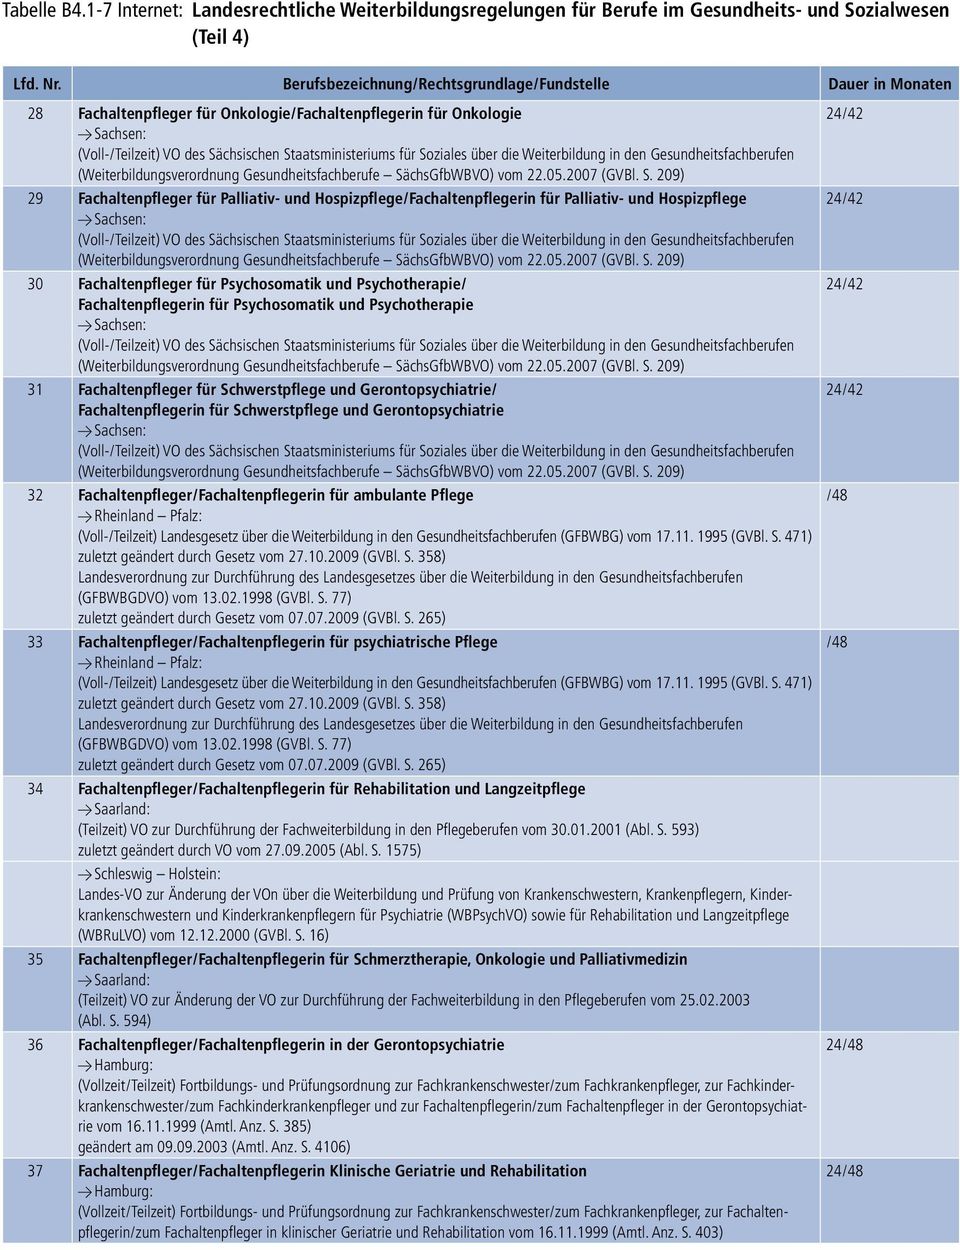 Gerontopsychiatrie 32 Fachaltenpfleger/Fachaltenpflegerin für ambulante Pflege Y Rheinland Pfalz: (Voll-/Teilzeit) Landesgesetz über die Weiterbildung in den Gesundheitsfachberufen (GFBWBG) vom 17.11.